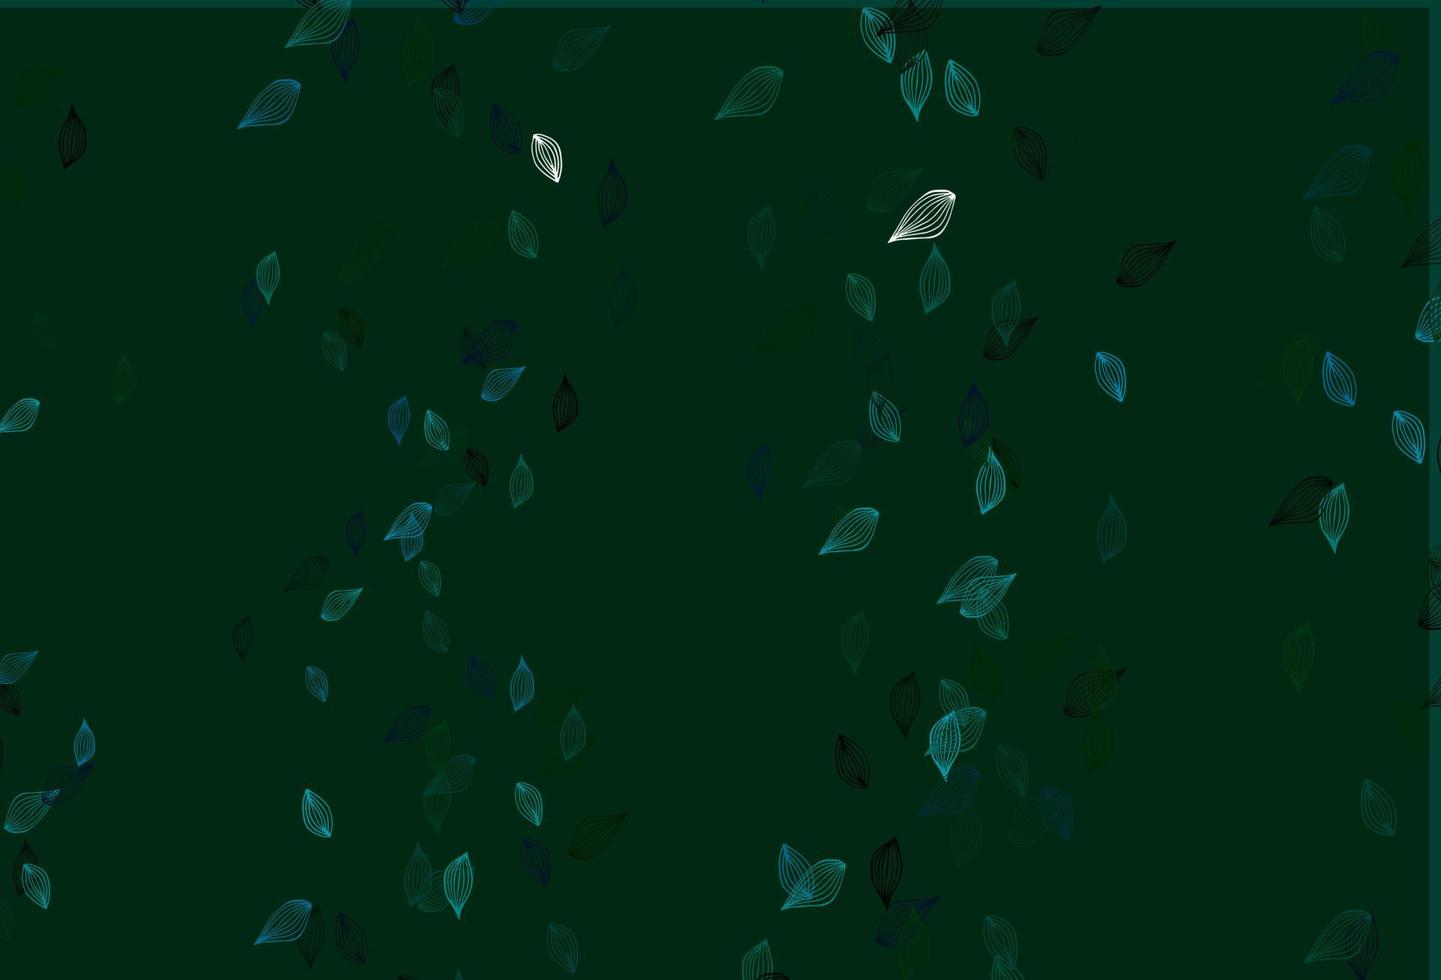 sfondo di doodle vettoriale azzurro e verde.